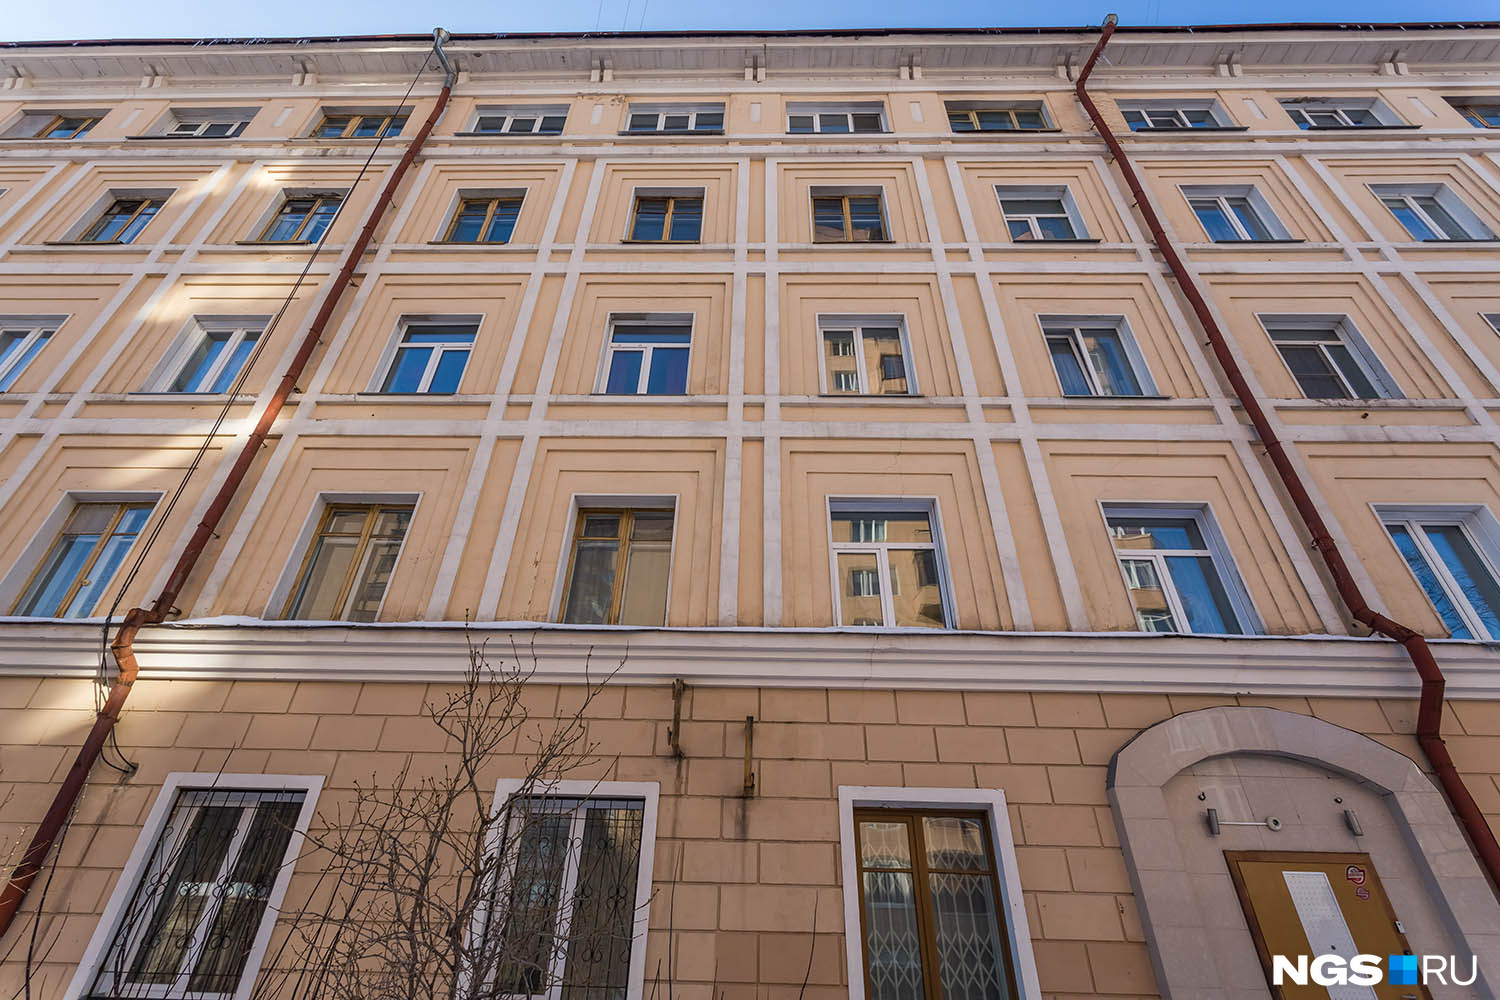 Как описывается на сайте novosibdom.ru, «Дом артистов» — яркий пример «штучного» строительства. Здание построено в переходной стилистике от конструктивизма 20-х годов к неоклассицизму 40–50-х. Основным архитектурным мотивом и главной особенностью дома является кессонирование фасадов — прямоугольные ниши-кессоны последовательно уменьшаются и углубляются в толщу стены, обрамляя окна и контрастируя с витражами лестничных клеток.